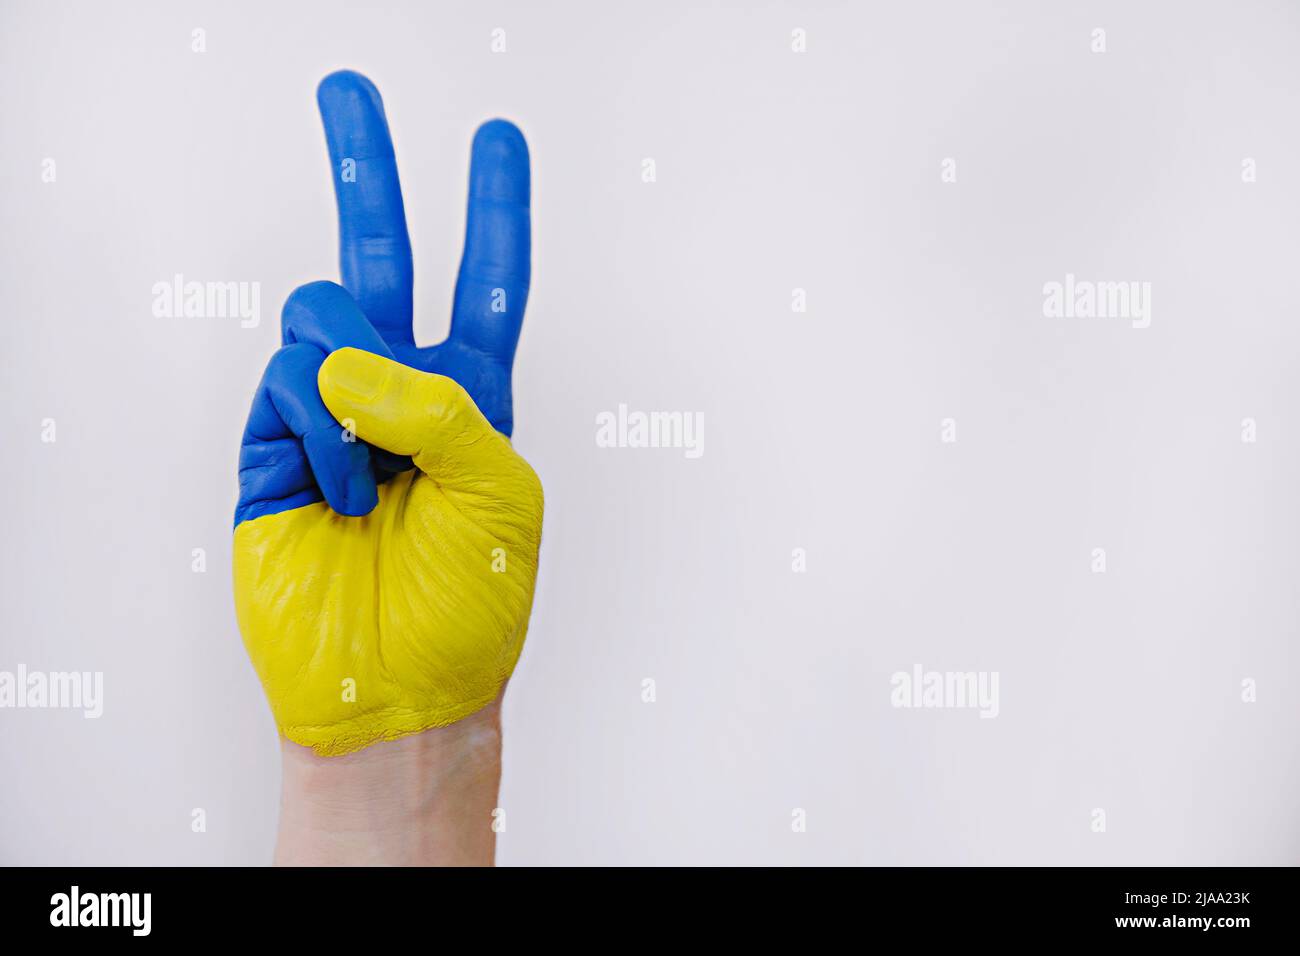 Main de l'homme peinte dans les couleurs du drapeau ukrainien montrant un geste de paix symbolique sur fond blanc isolé. Copier l'espace, gros plan. Banque D'Images